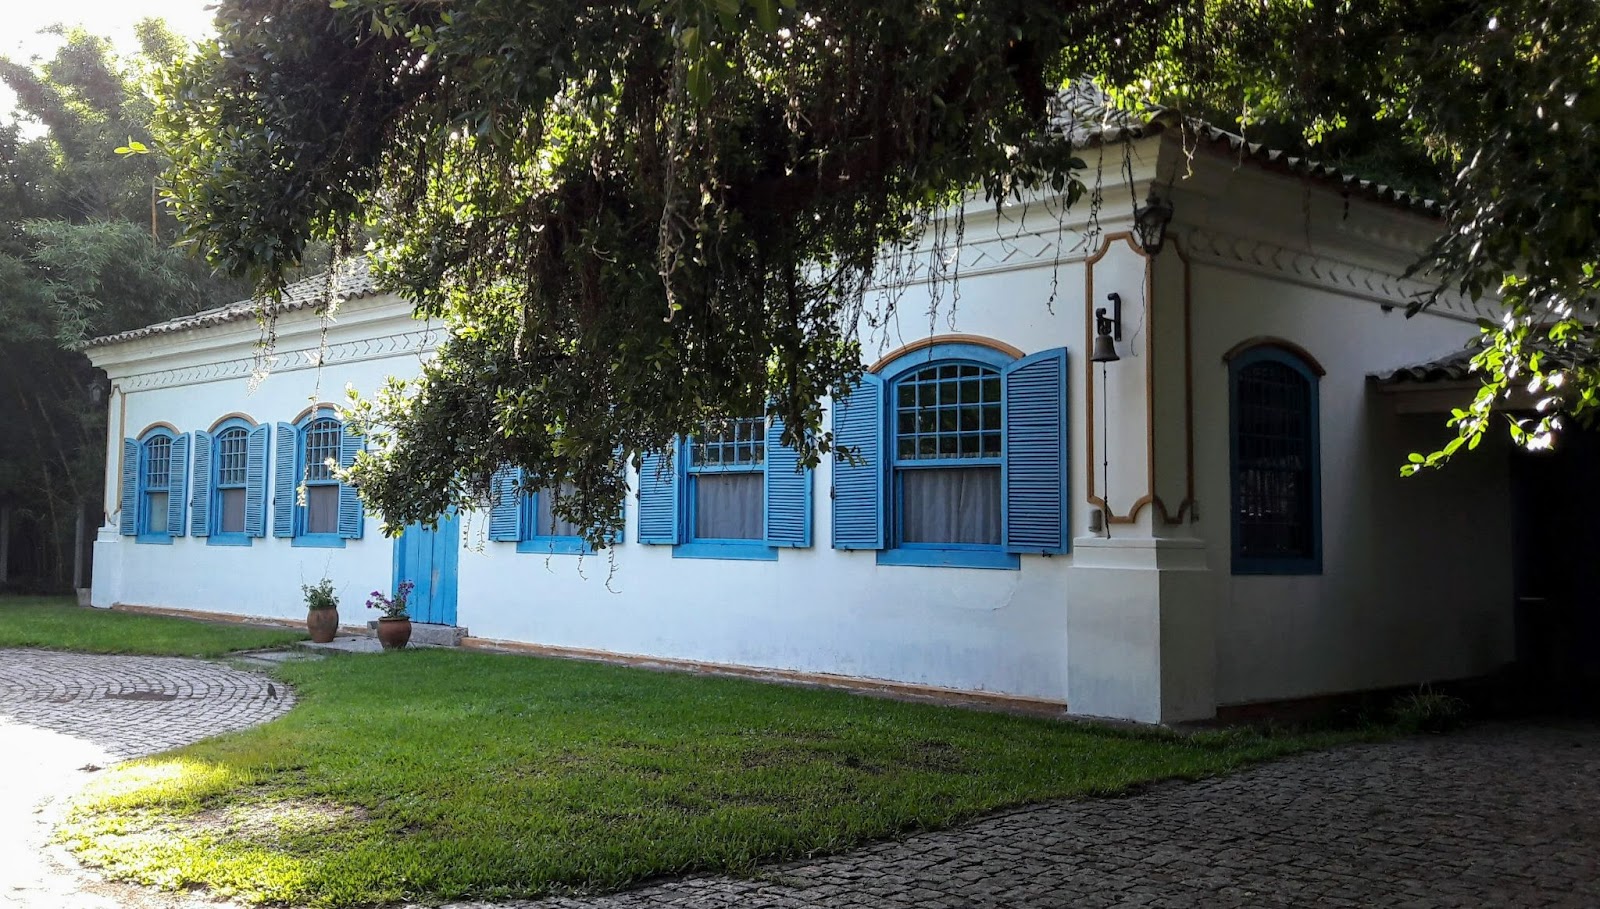 Grande casa em estilo colonial, com seis janelas e uma porta centralizada pintadas de azul claro, em destaque com o branco das paredes.